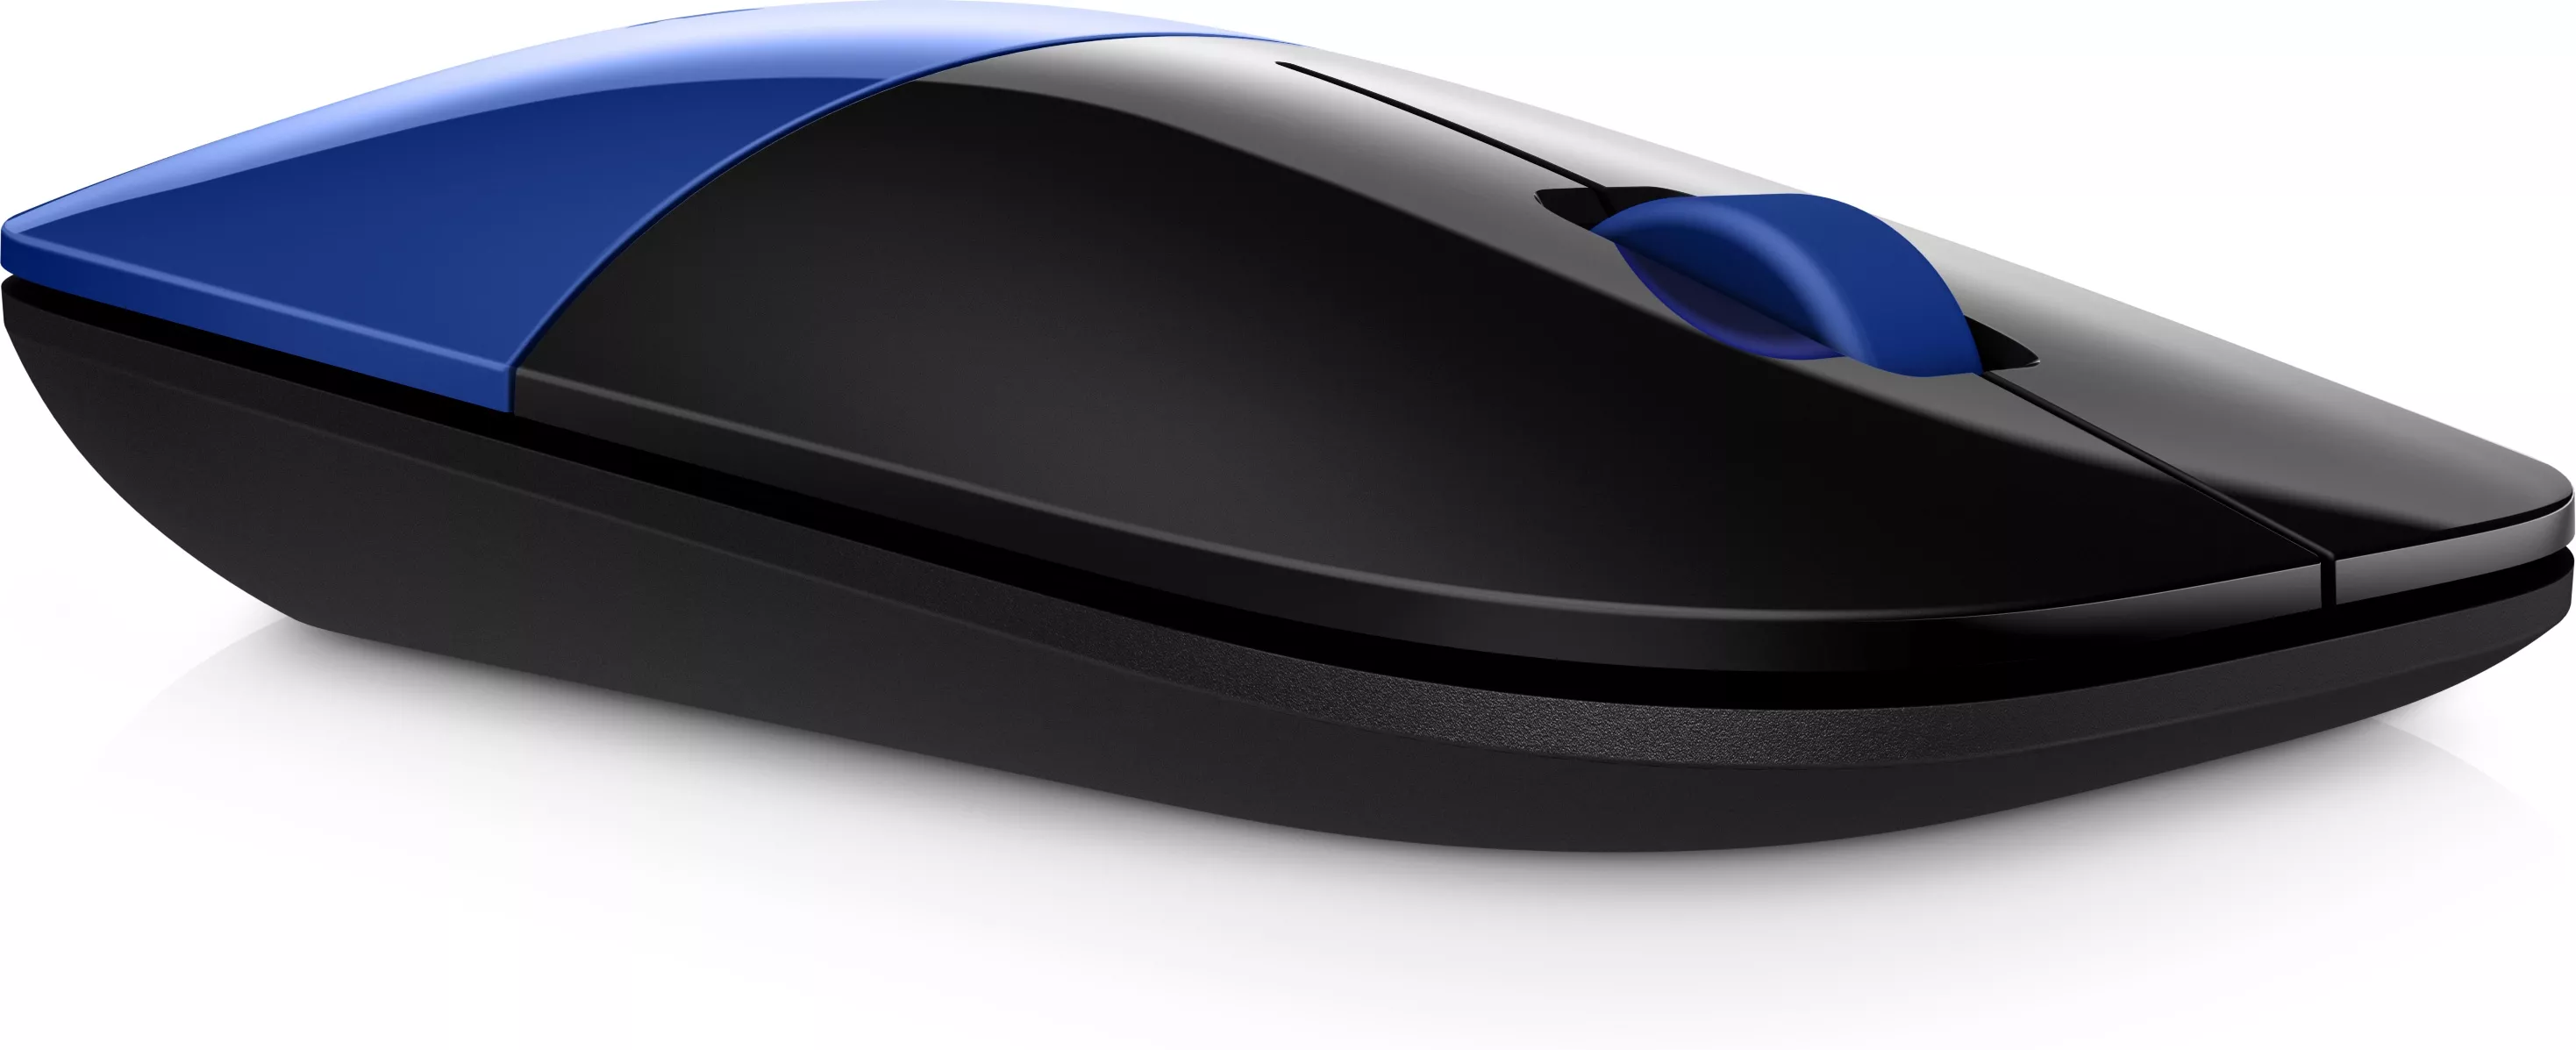 Vente HP Z3700 Blue Wireless Mouse HP au meilleur prix - visuel 10